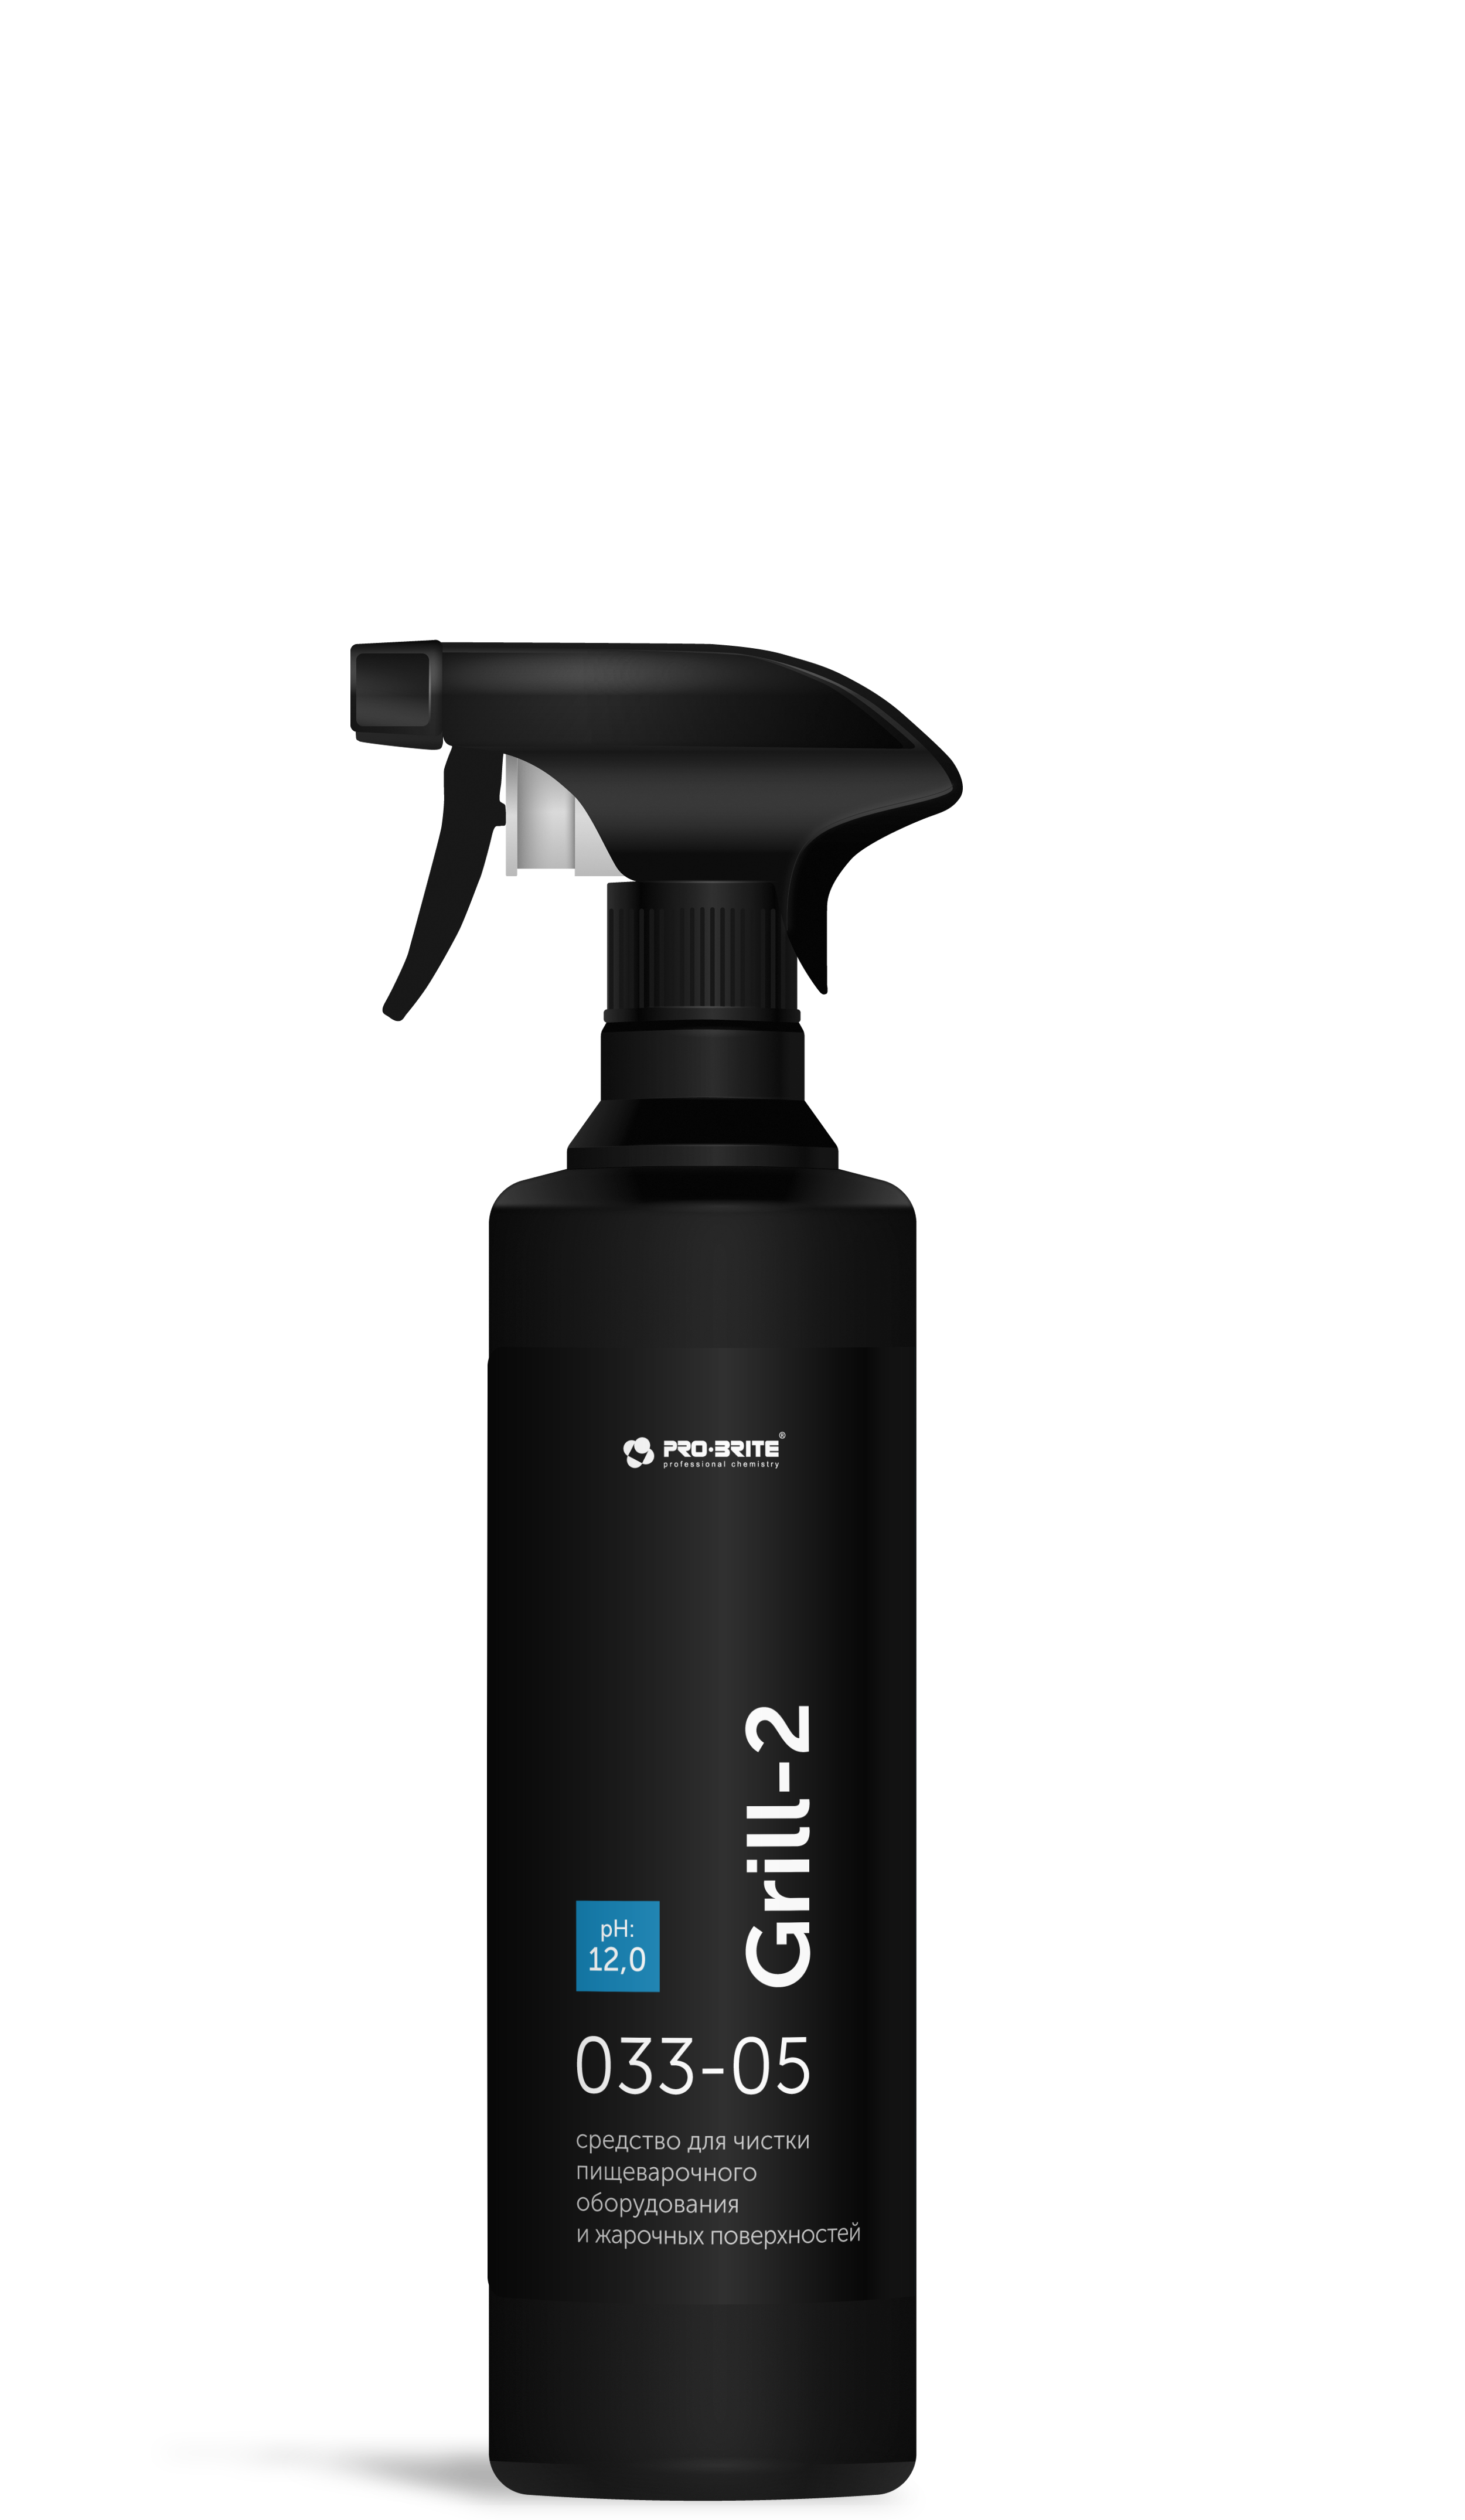 Grill-2 (Гриль-2) 0,5 л. Средство для чистки пищеварочного оборудования и жарочных поверхностей. PRO-BRITE